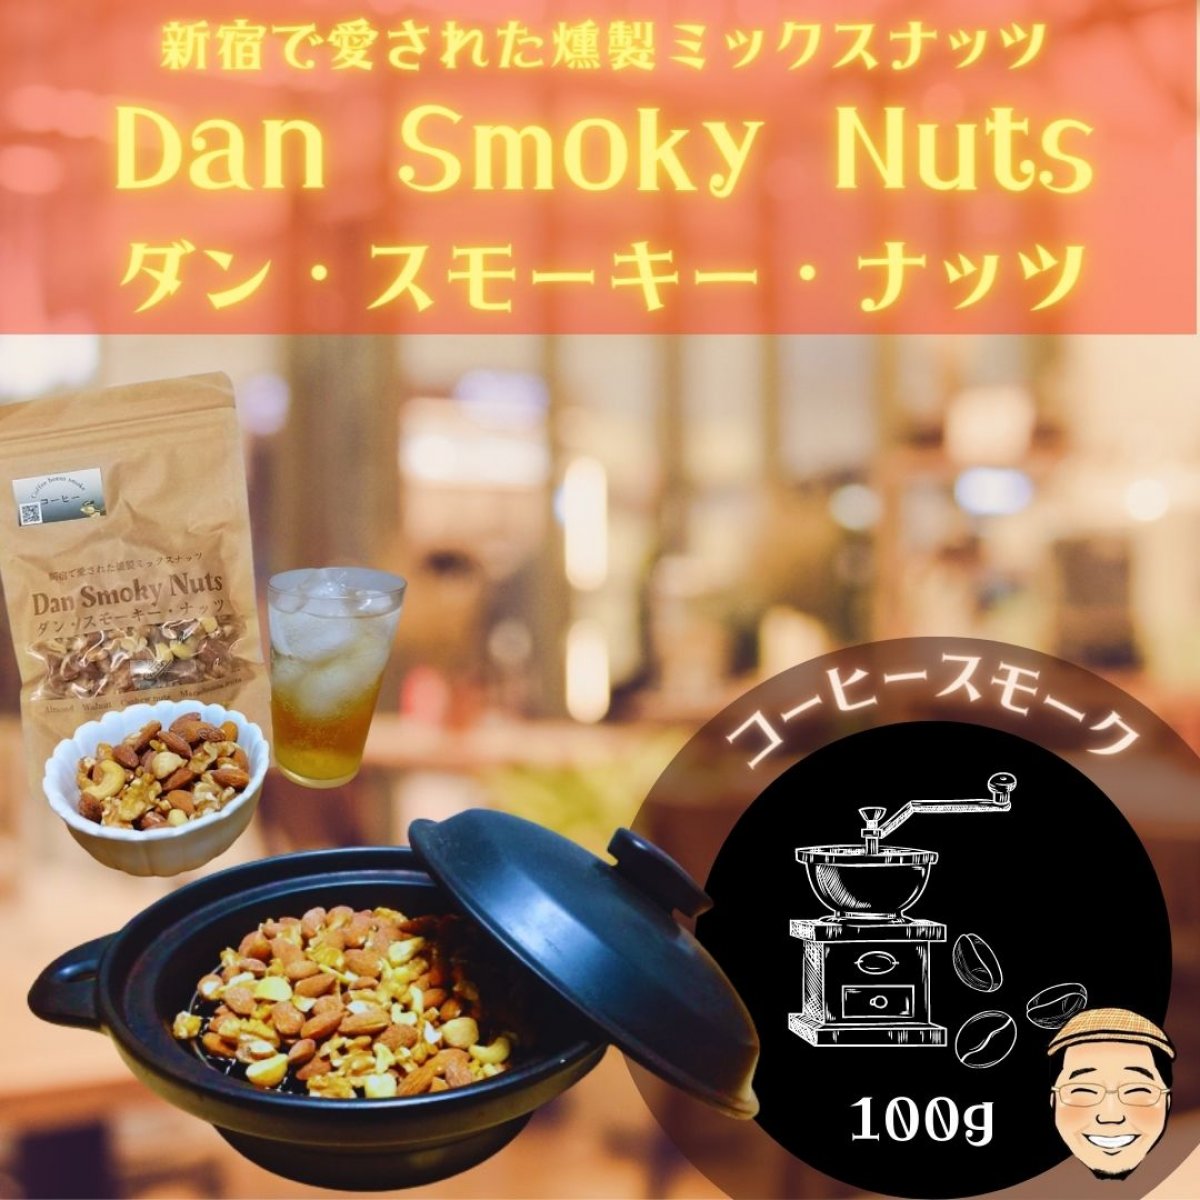 《コーヒー》100g【送料無料】新宿で愛された燻製ミックスナッツ〜Dan・Smoky・Nuts〜